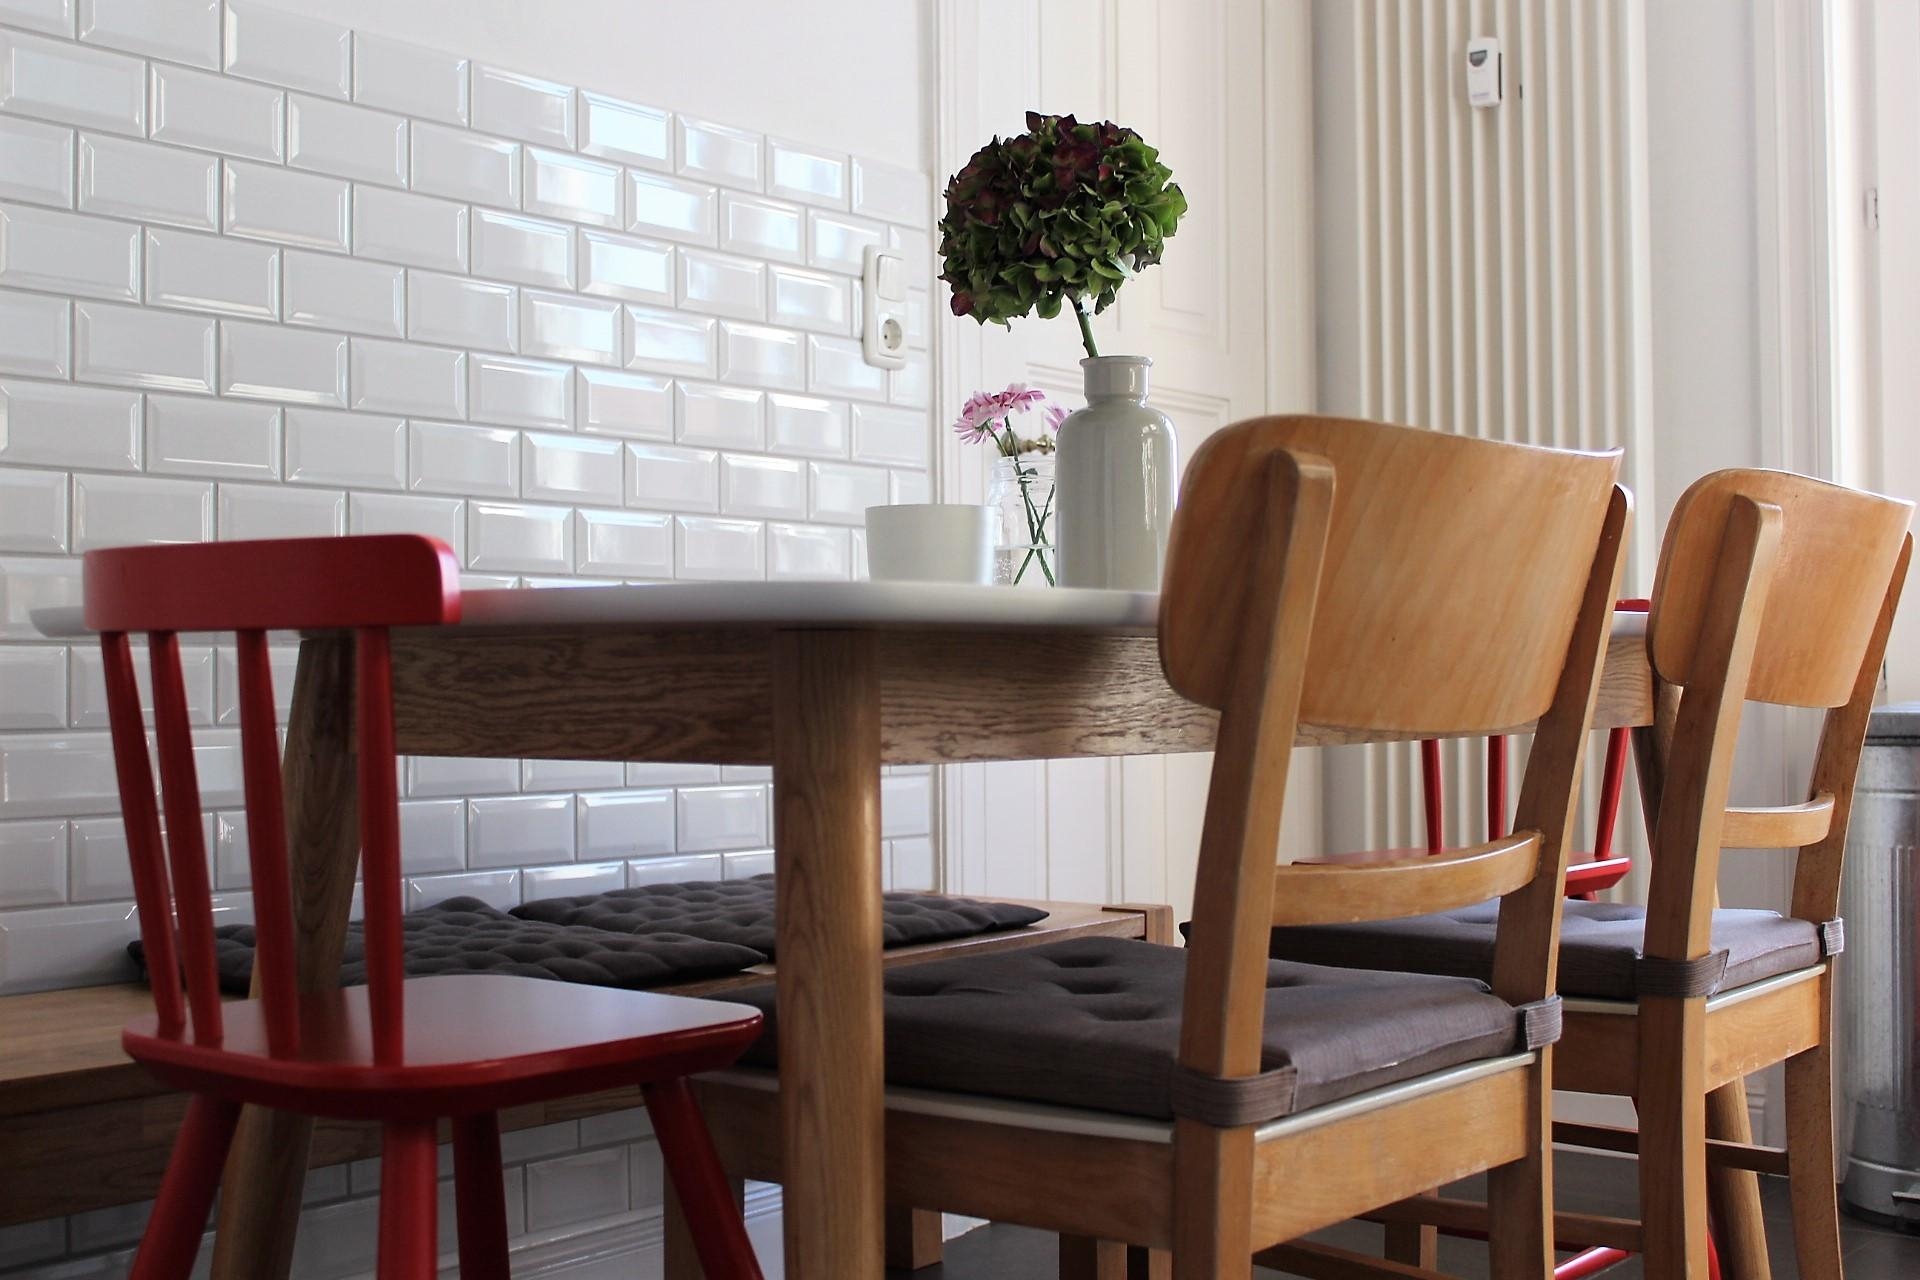 #Esstisch #Essbereich #Tisch #Küche #Stuhl #Esszimmer #Altbau #Metrofliesen